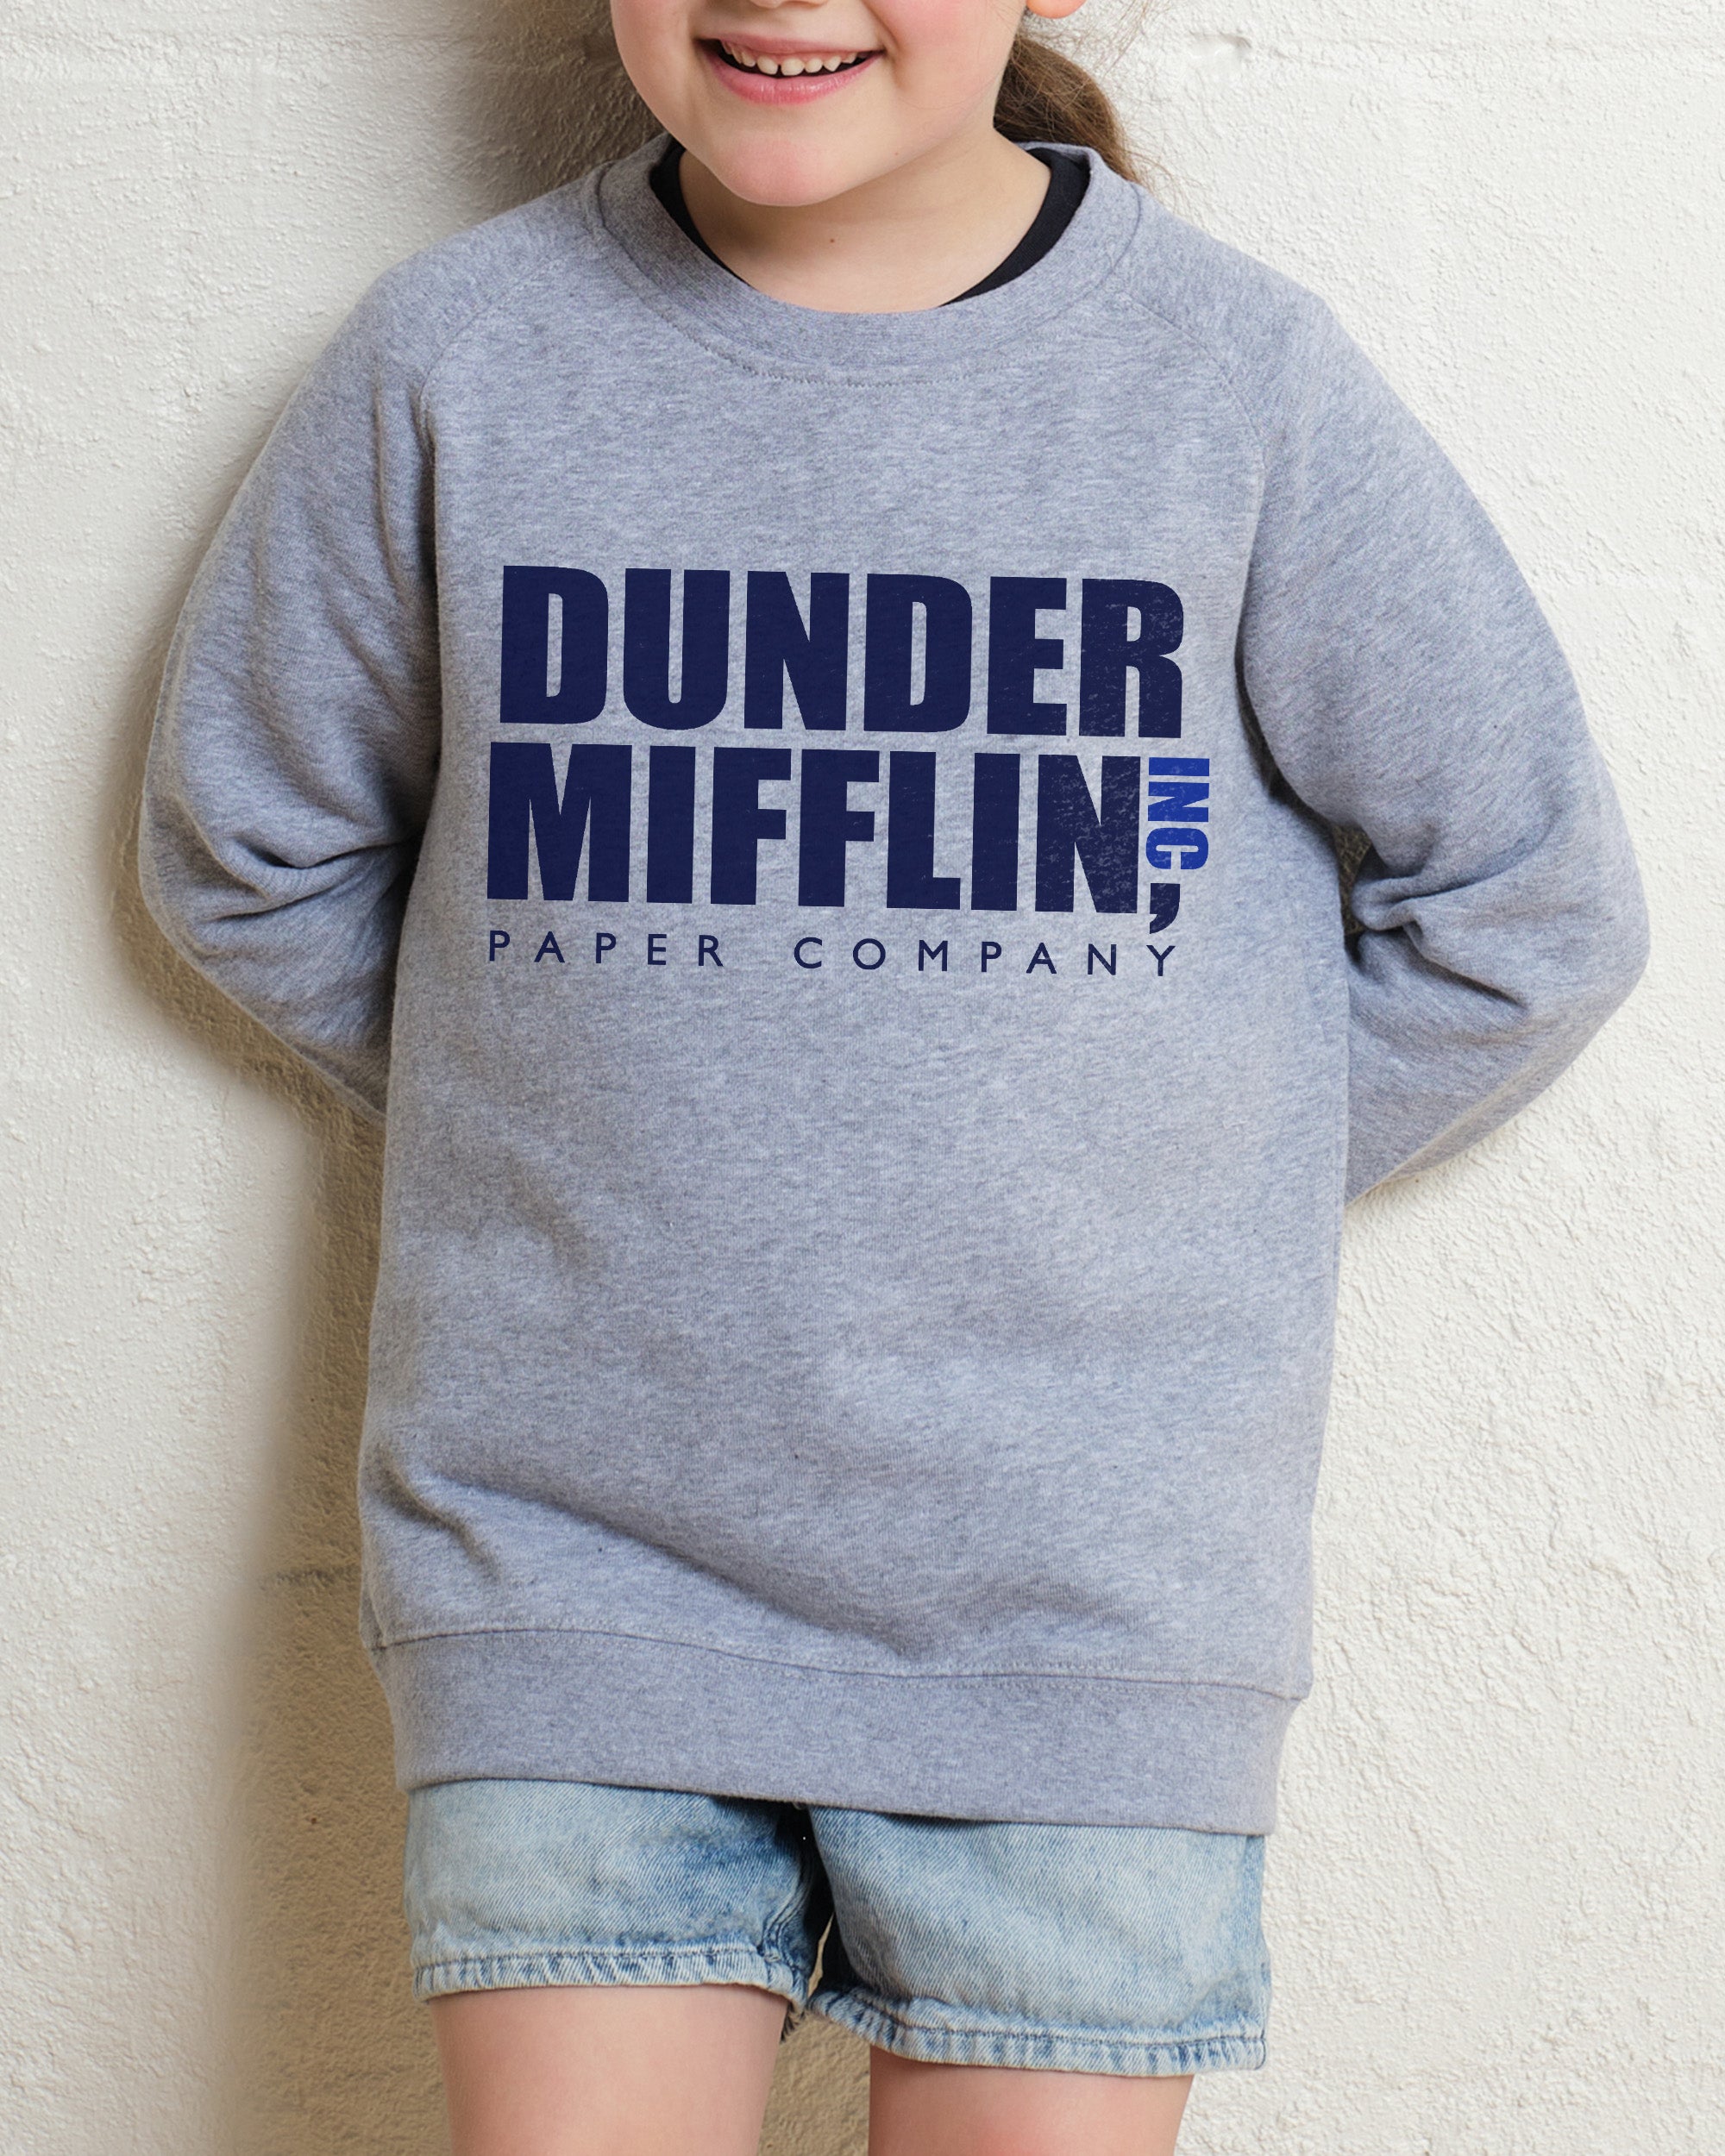 Dunder Mifflin Kids Jumper